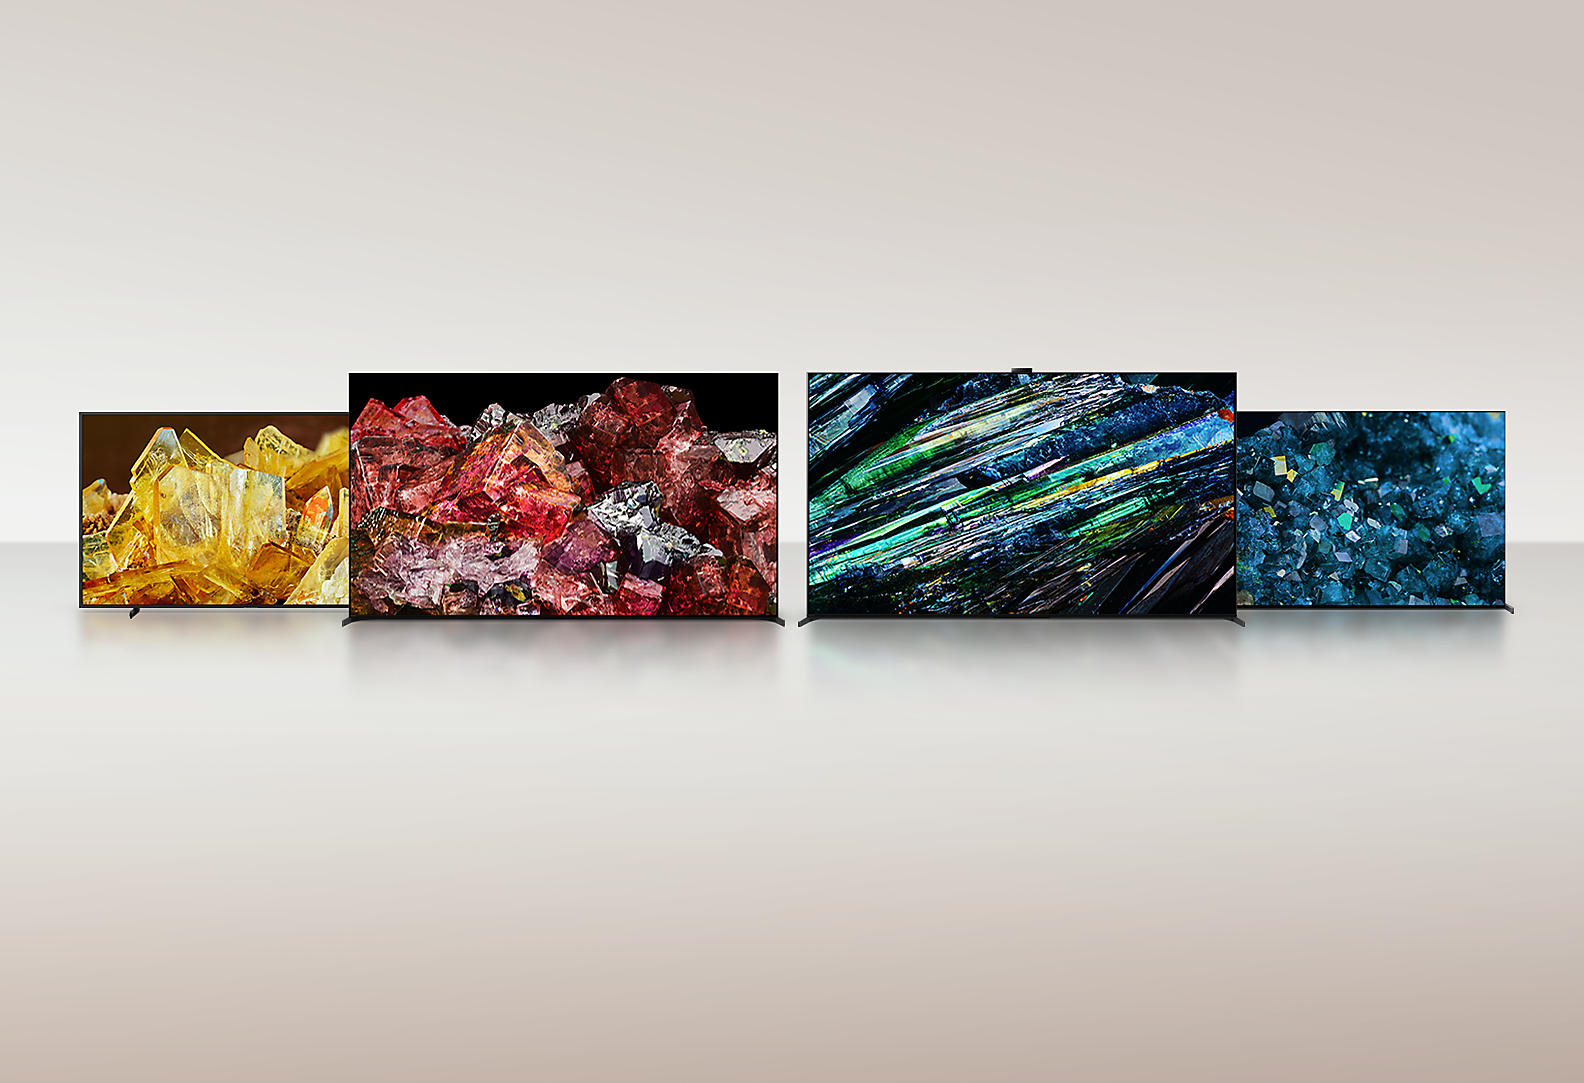 Keturi BRAVIA XR televizoriai nepaprastai raiškiai ir spalvotai per visą ekraną rodo skirtingų tipų kristalų vaizdus